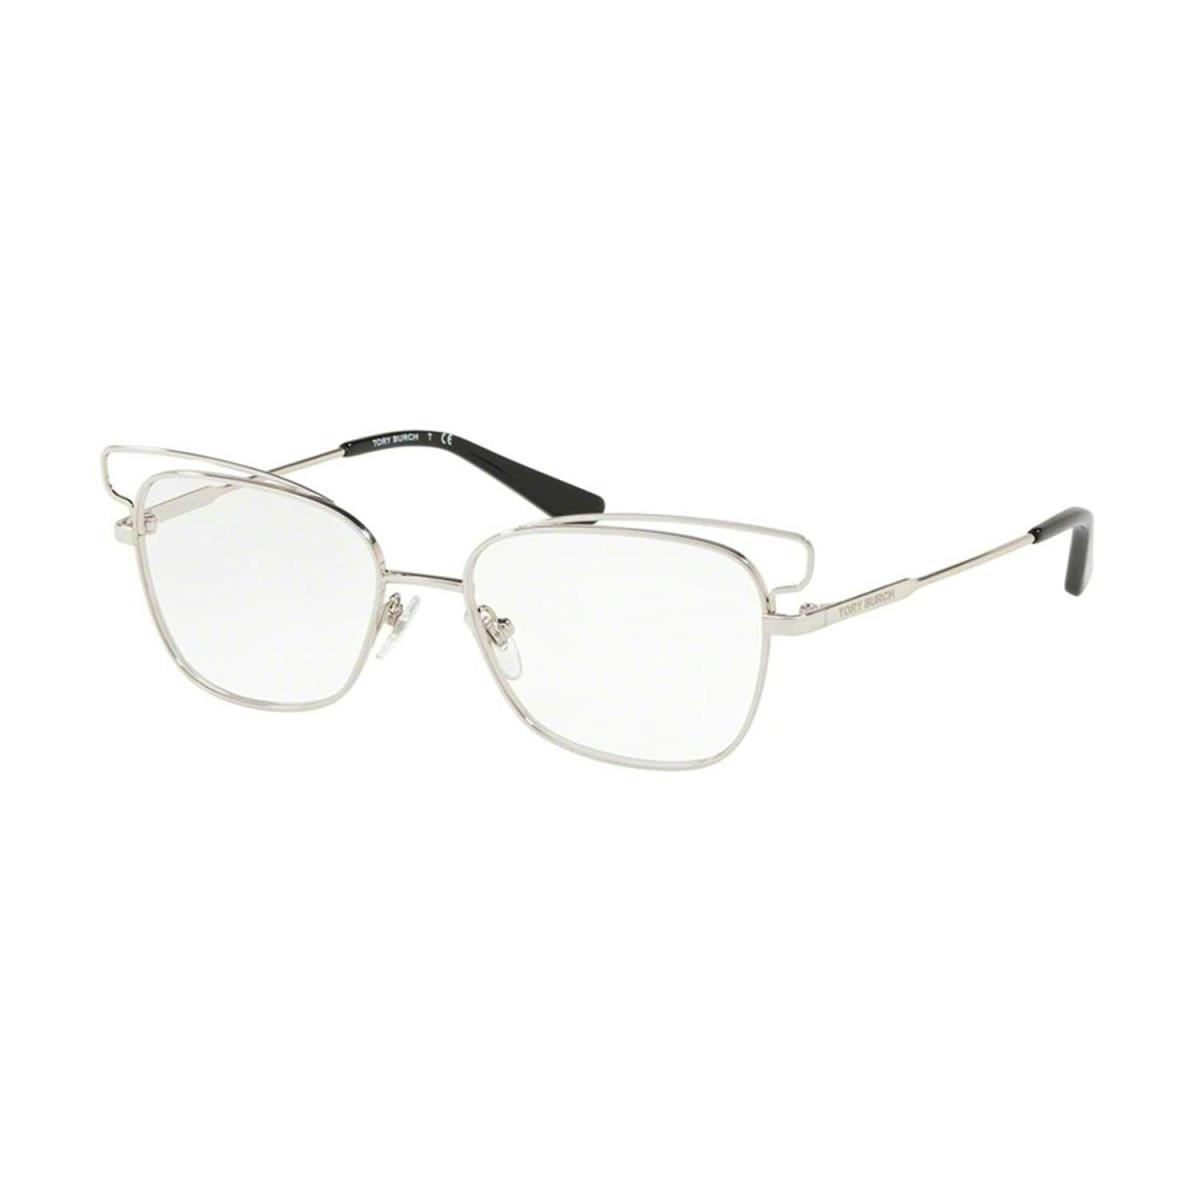 Tory Burch Eyeglasses TY1056 3161 Shiny Silver W/ Demo Lens 53MM